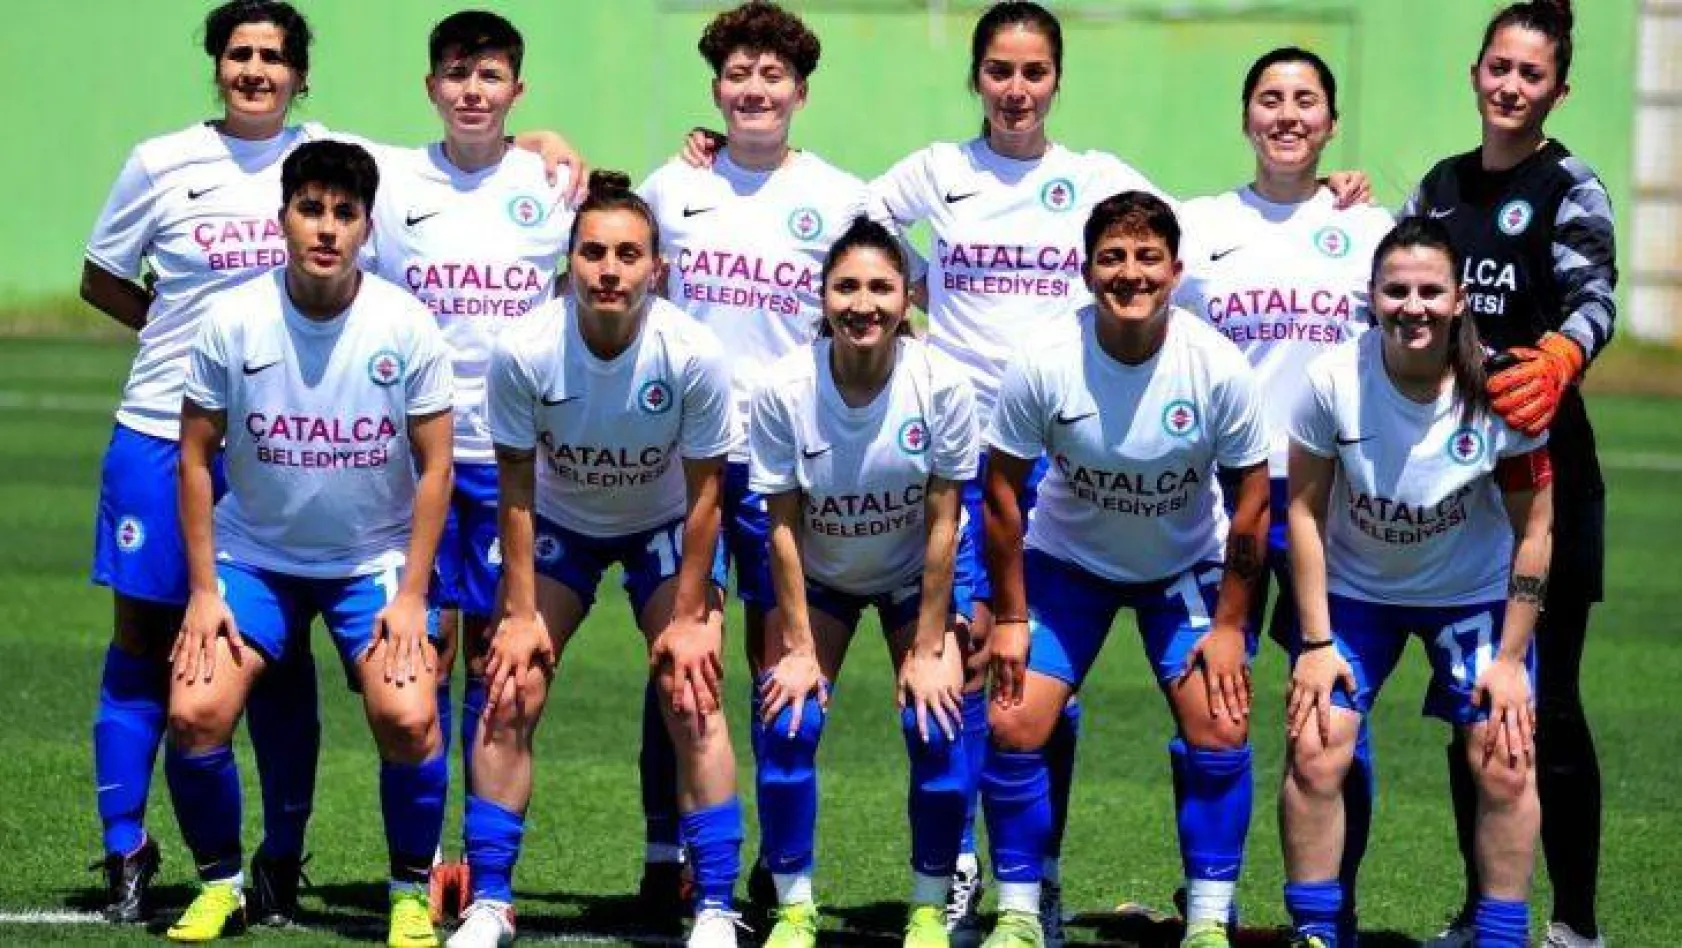 Çatalca'nın Kızlarından gol şov 16-0